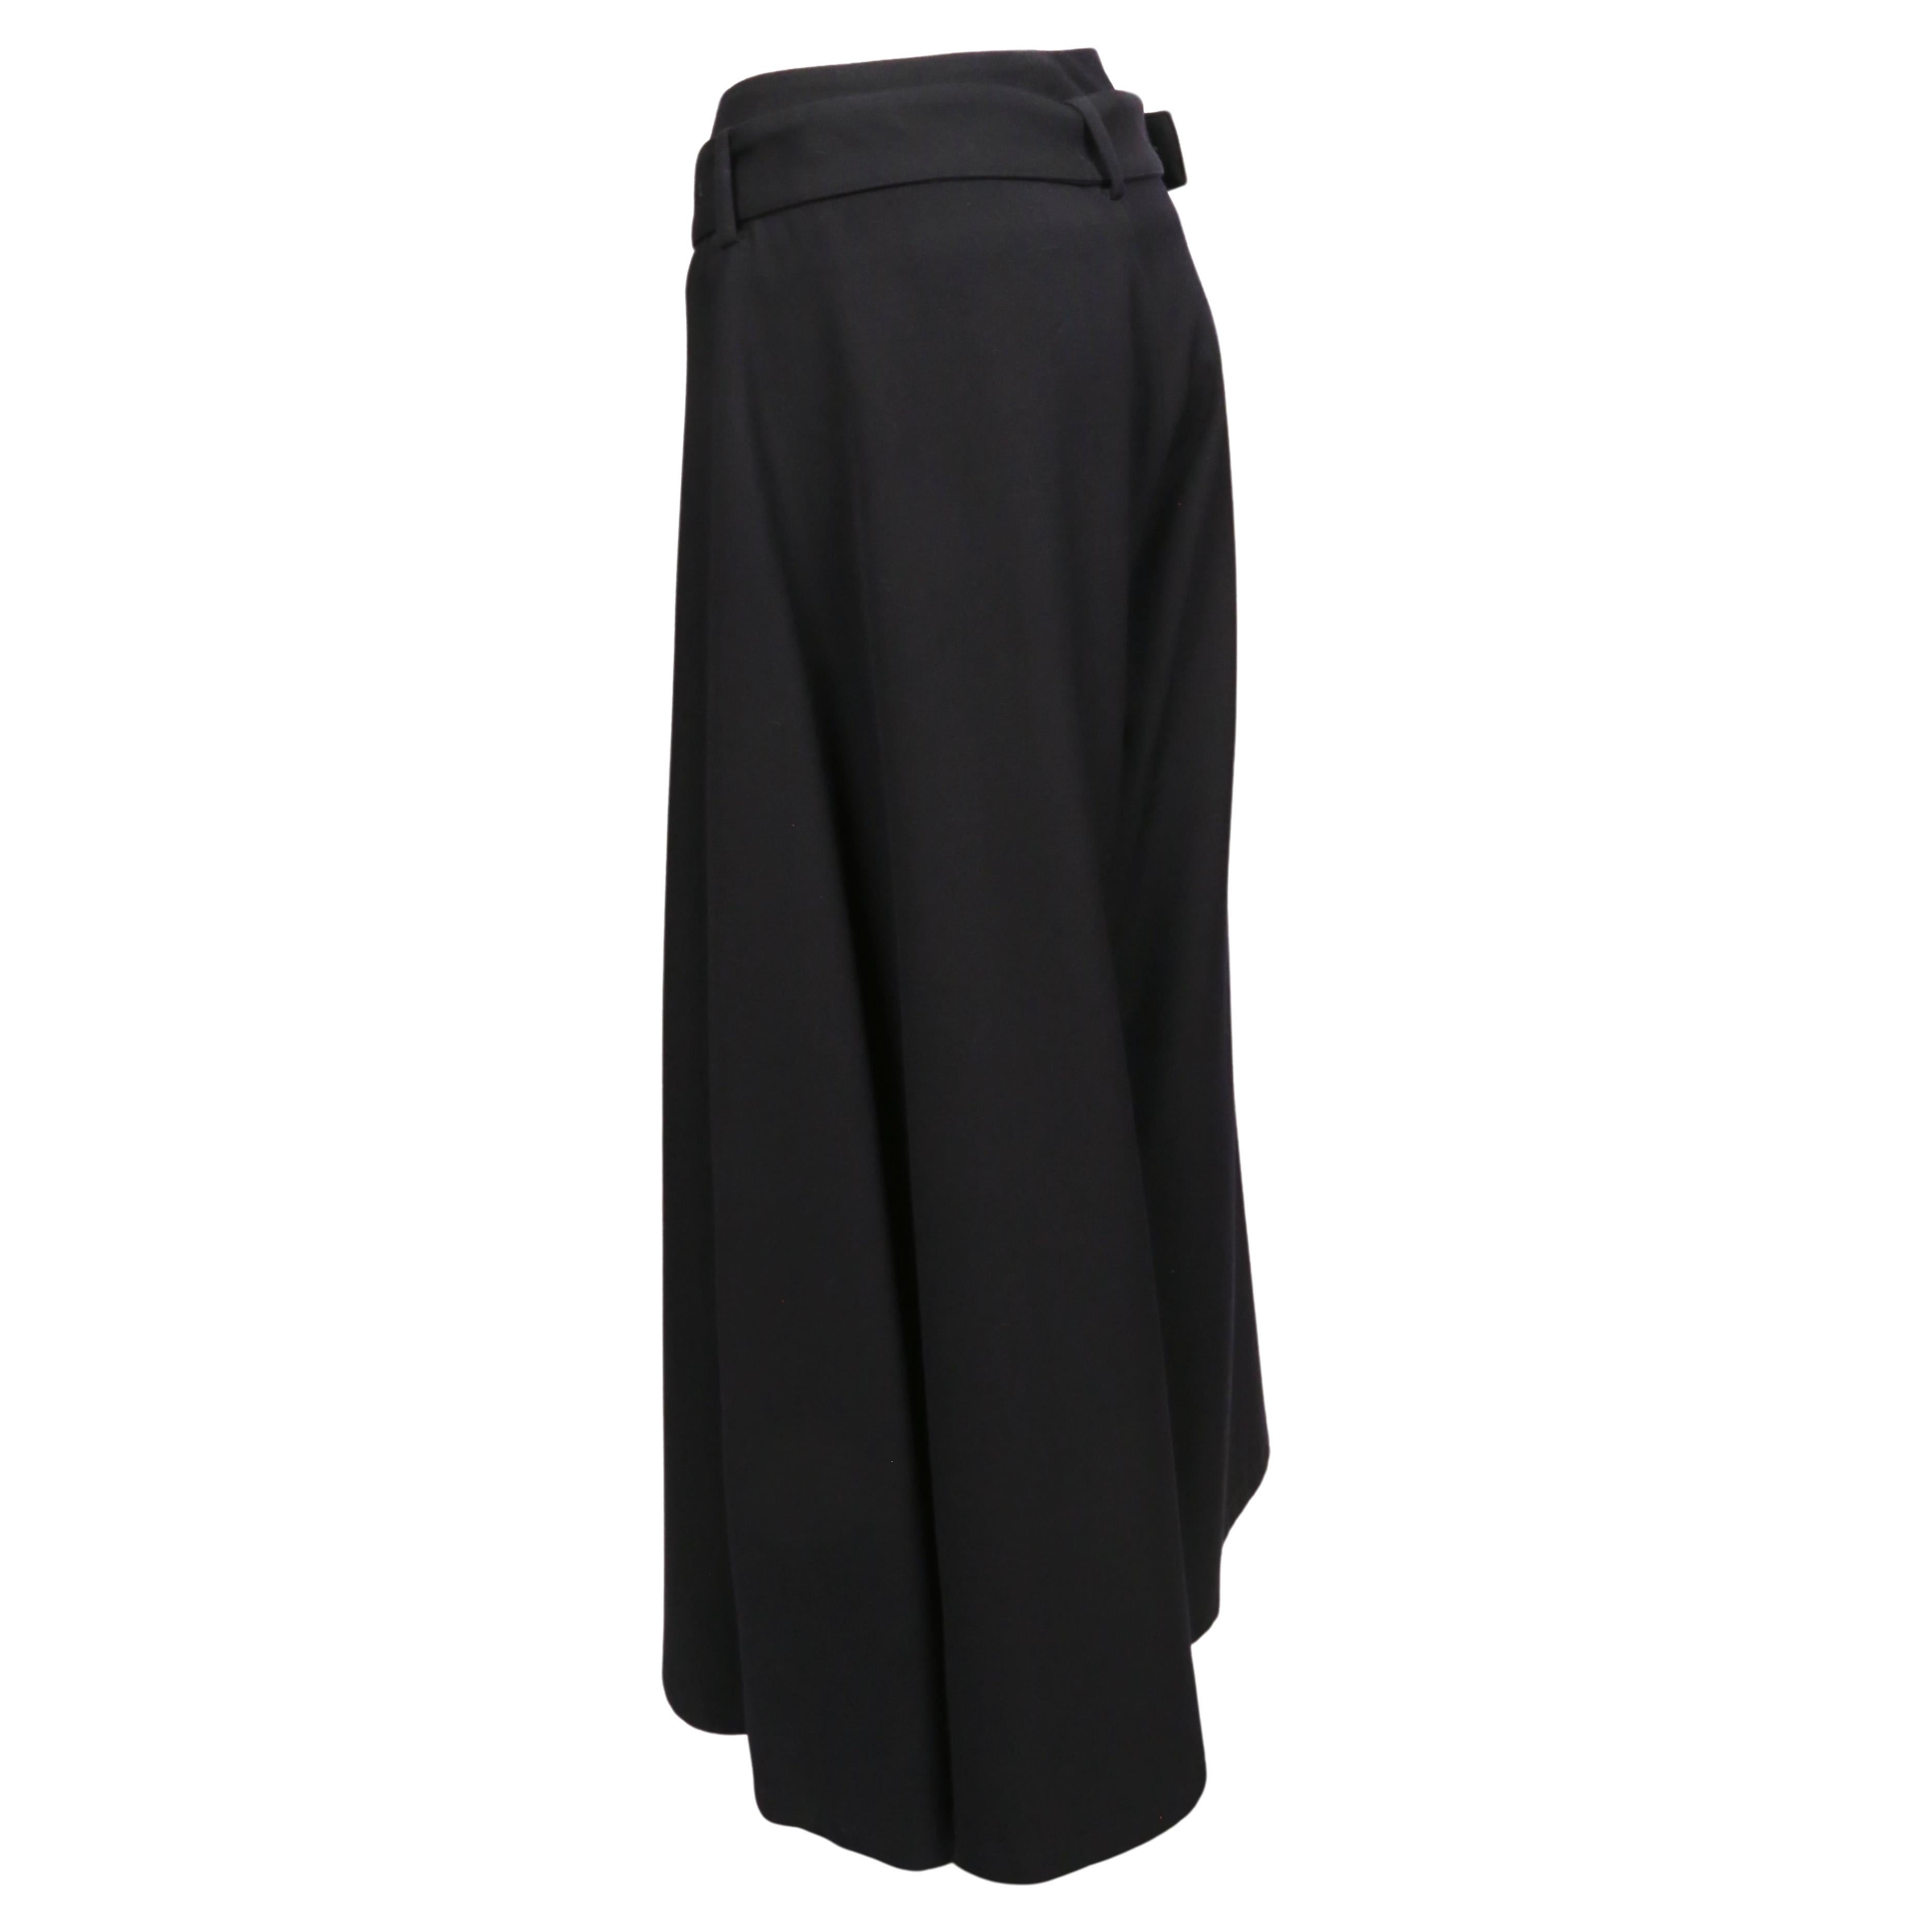 Pantalon à jambe large asymétrique d'un noir d'encre, conçu par Yohji Yamamoto et datant des années 2000. Taille japonaise 